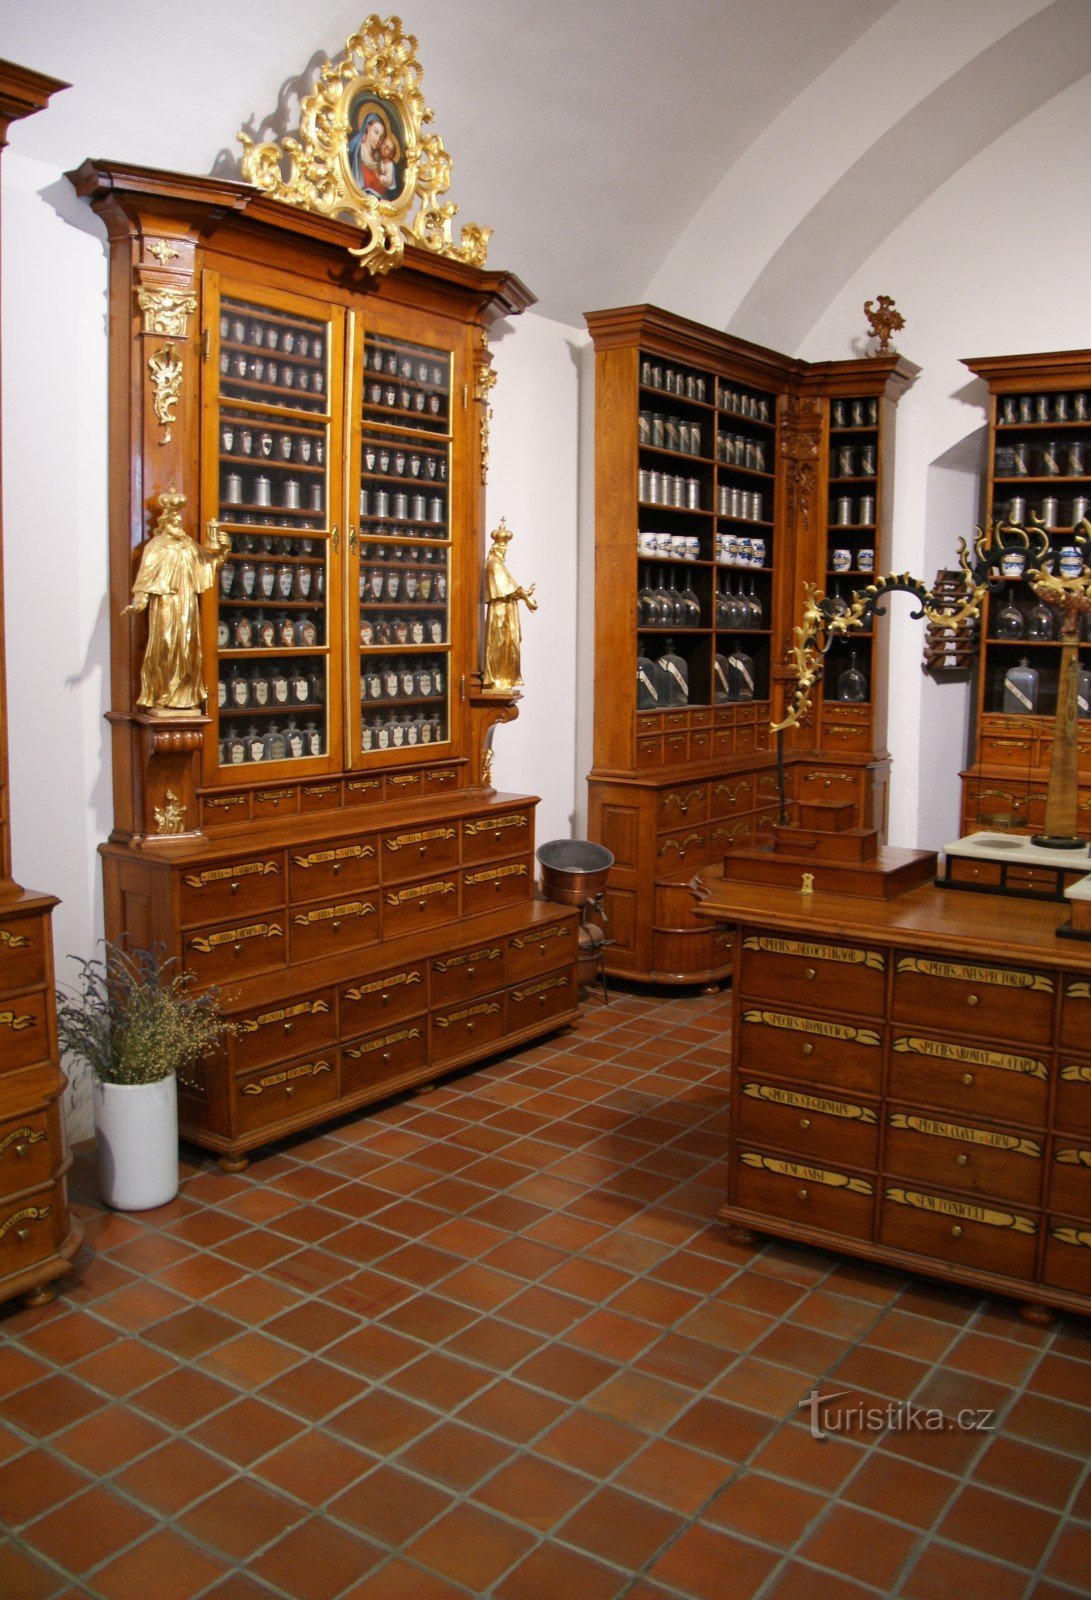 ブルノ (シュピルベルク) – バロック様式の薬局